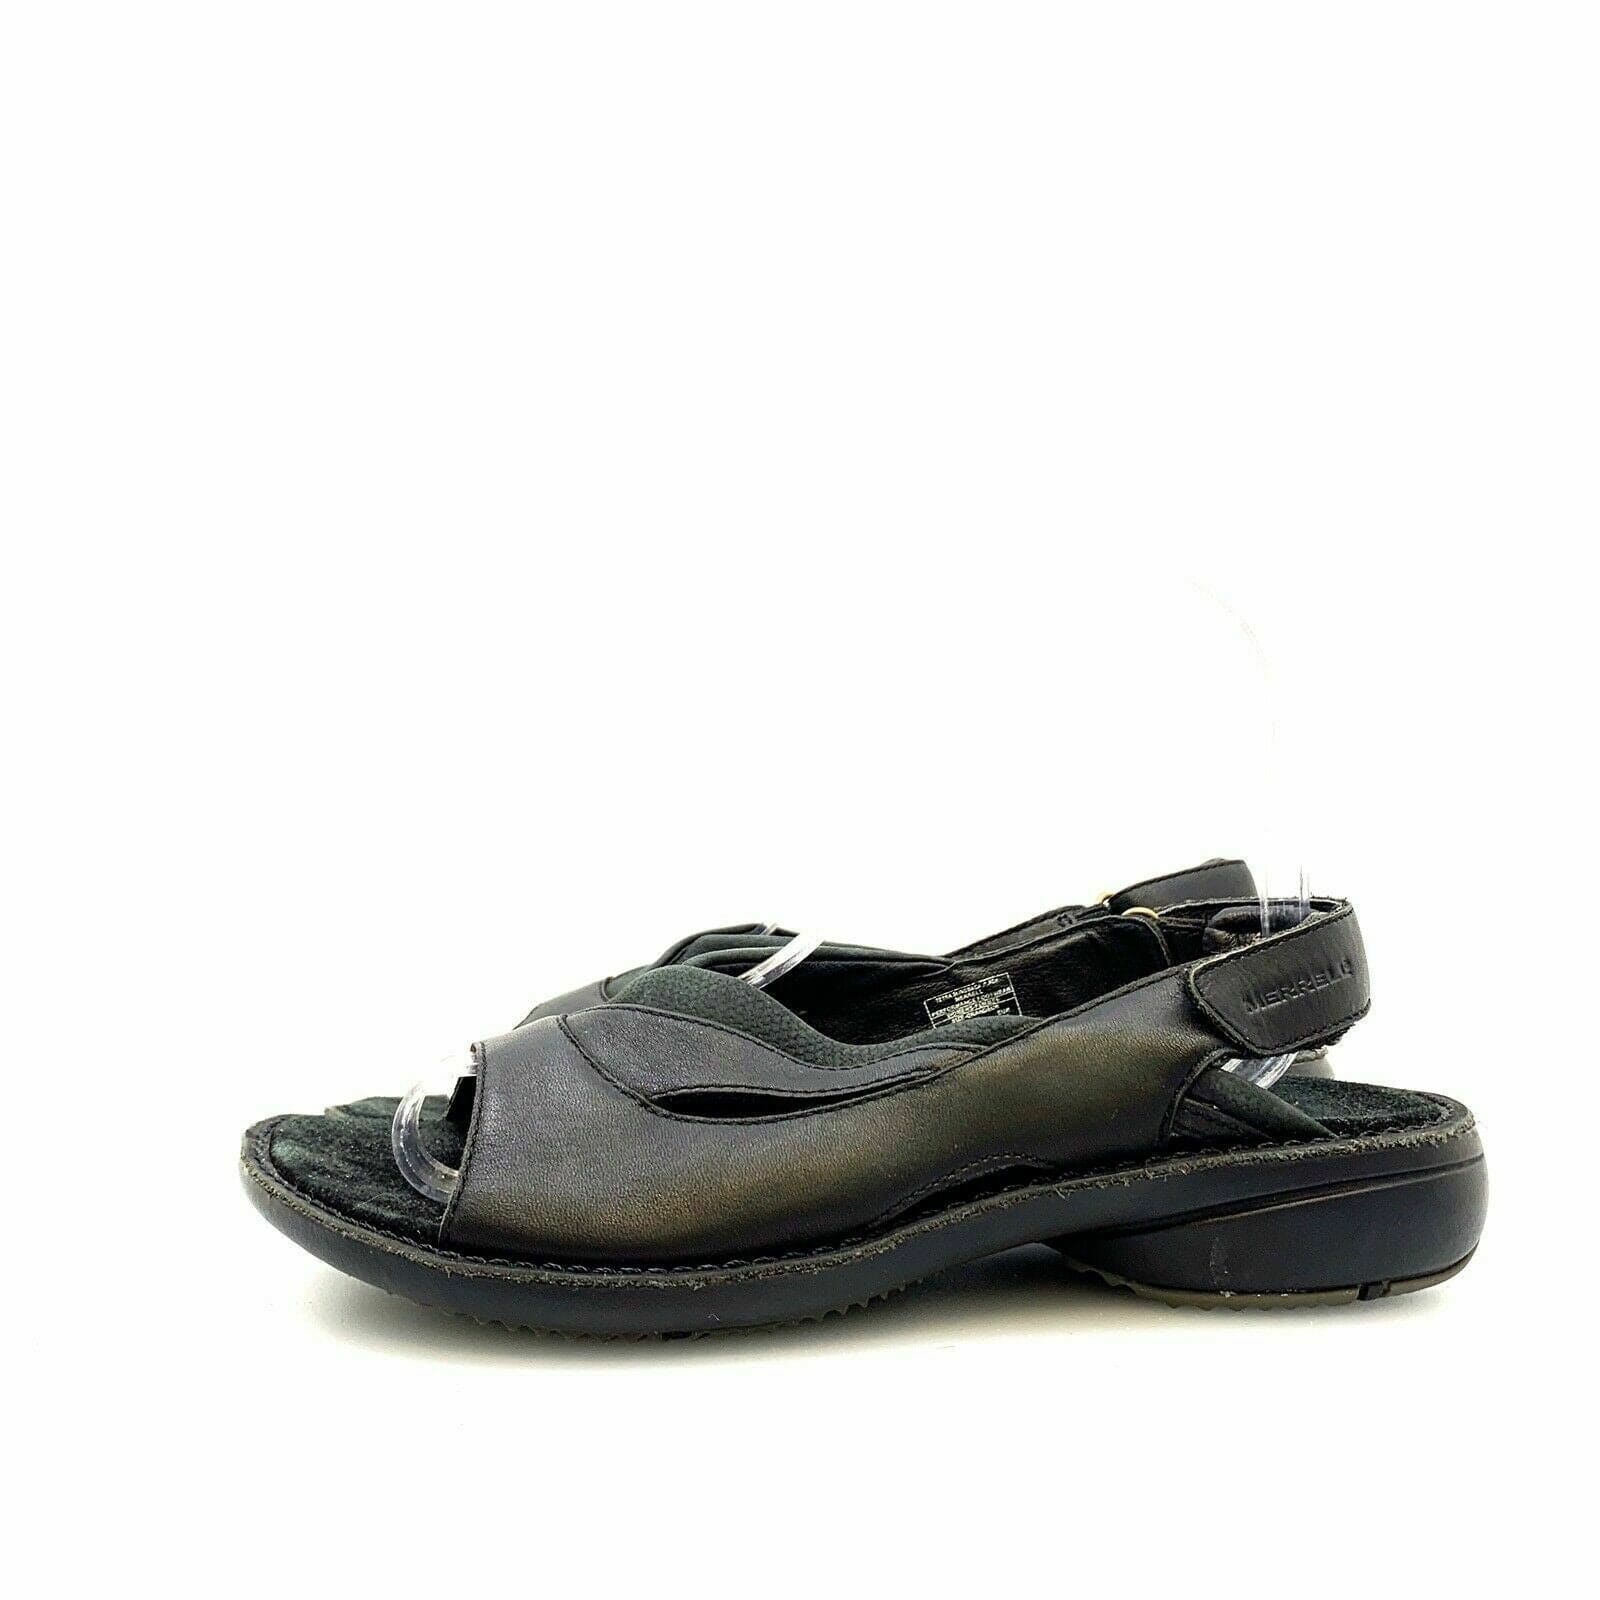 Doc Dr. Martens Blaire Flatform Olive Leather Sandals Women's Size 6 37 UK  4 New | Leather sandals women, Womens sandals, Leather sandals